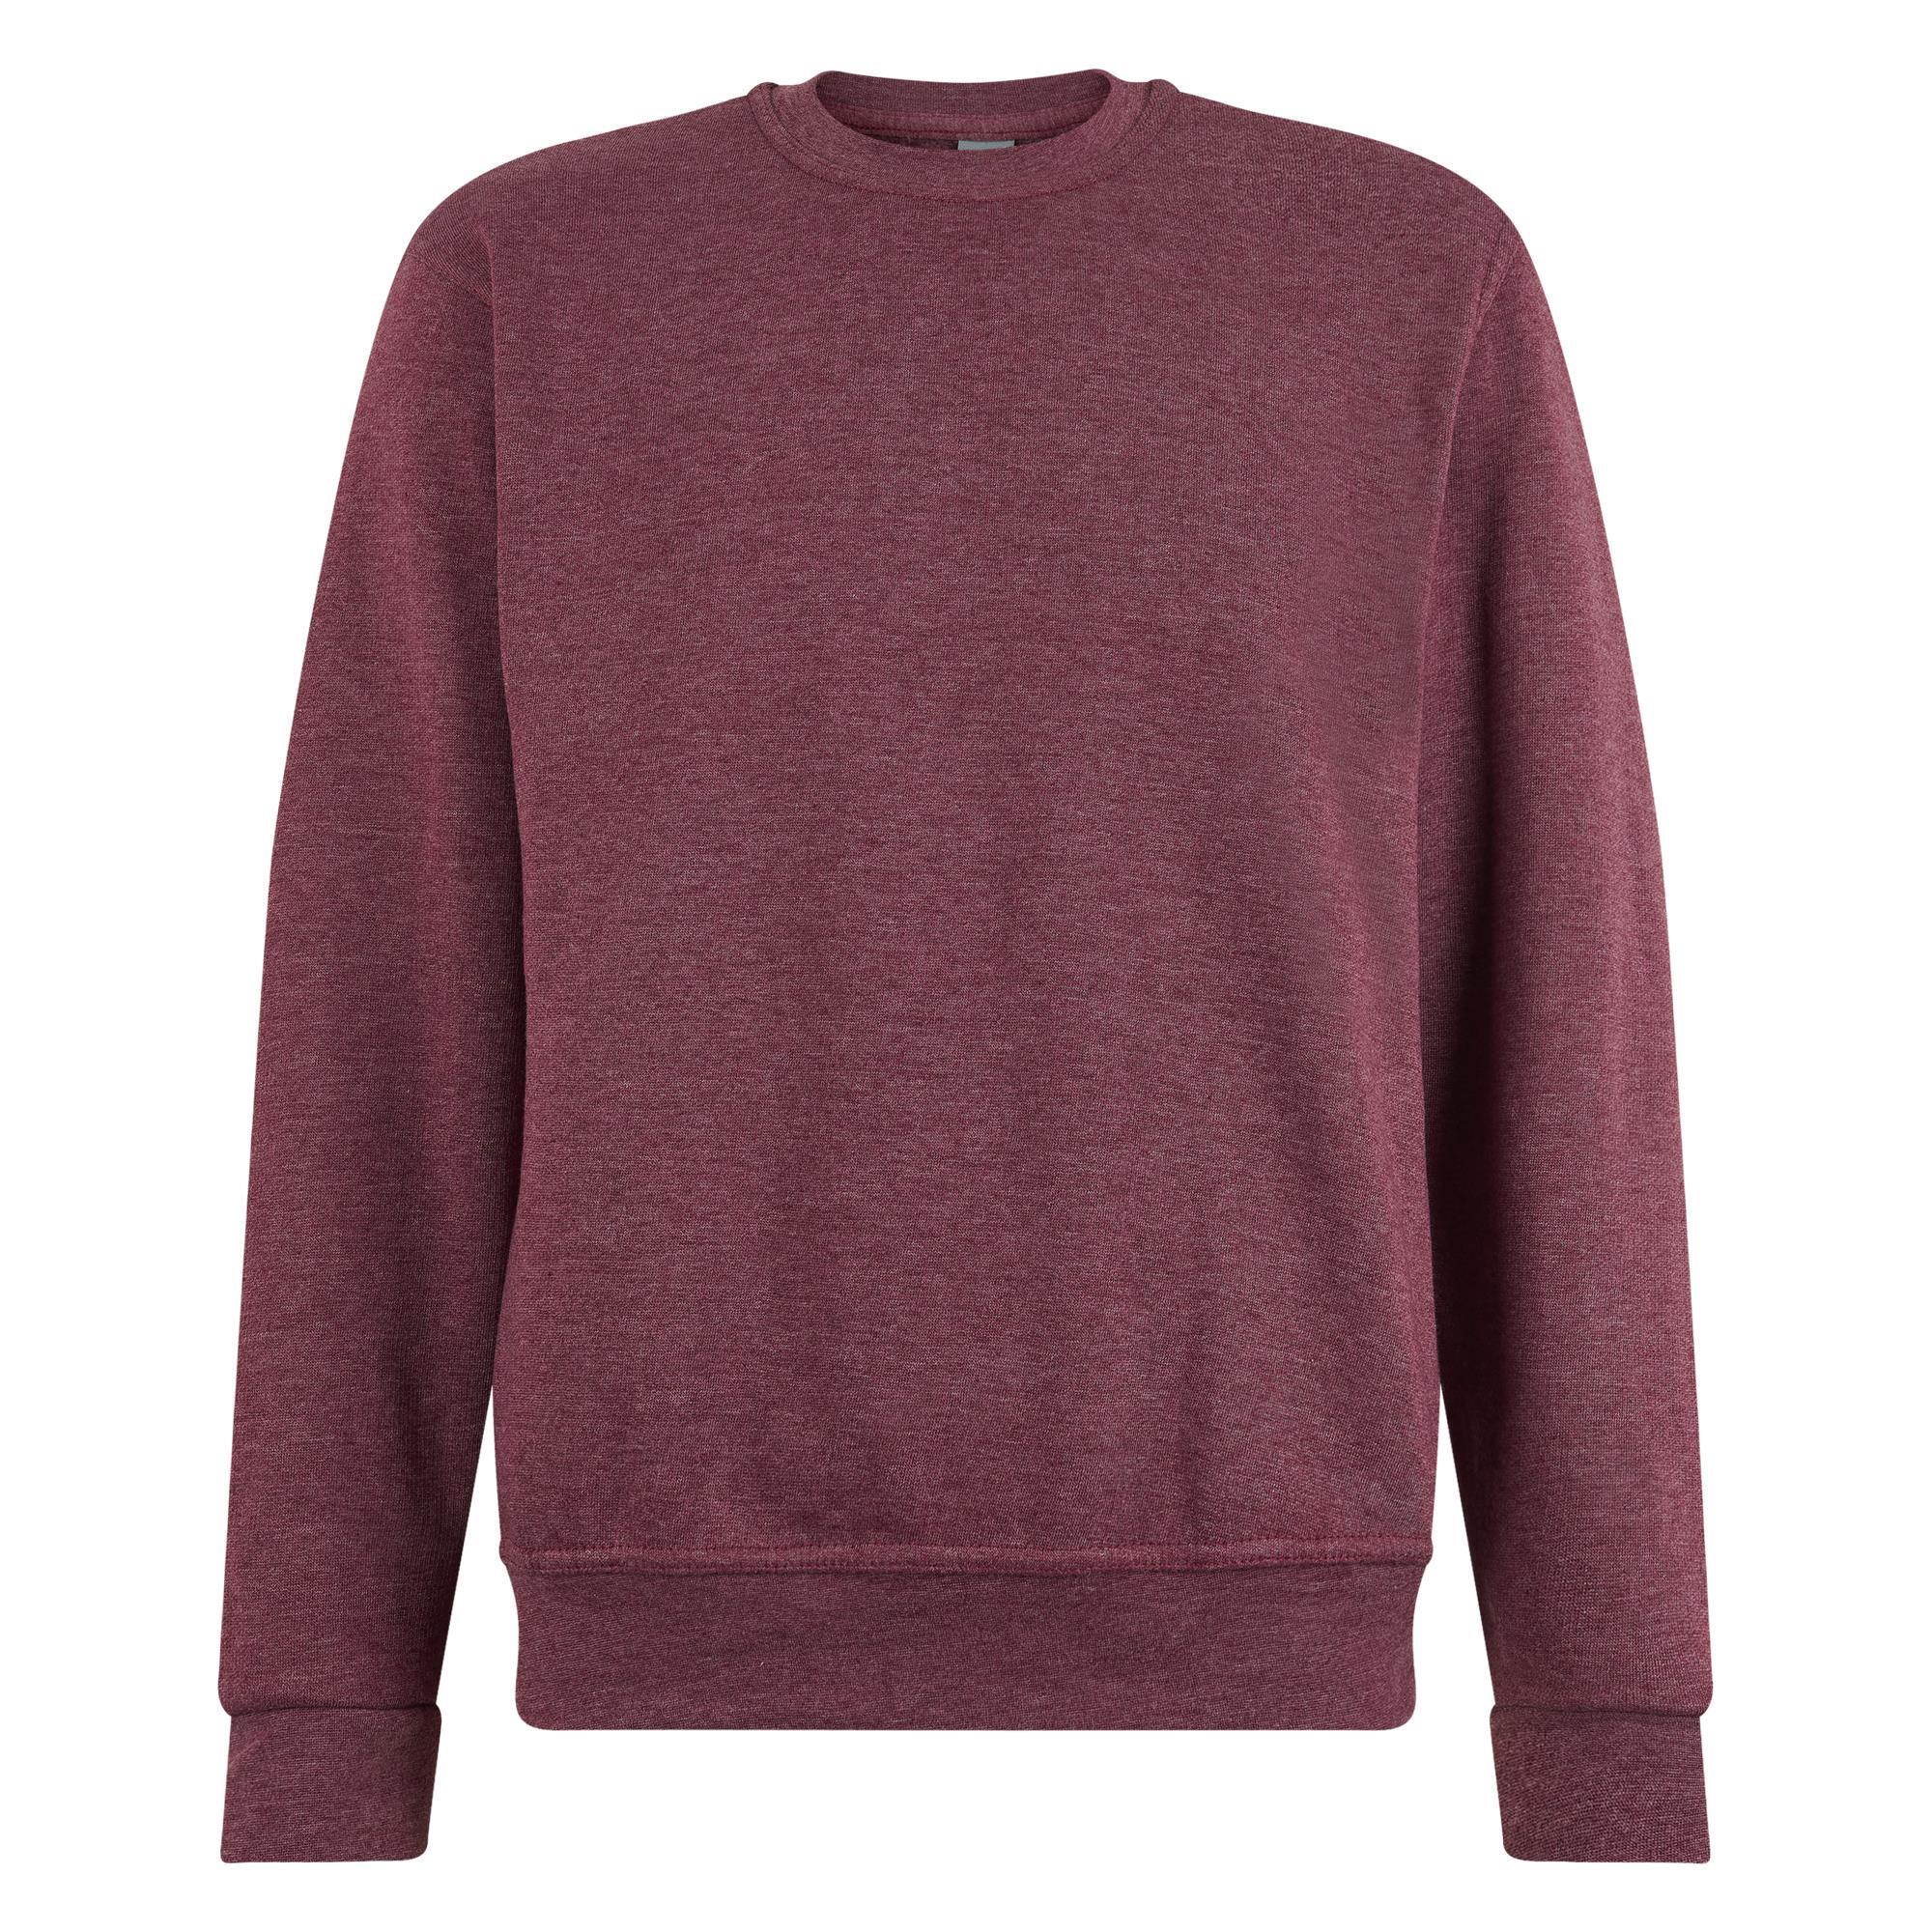 Sweater maroon heather voor mannen Logostar